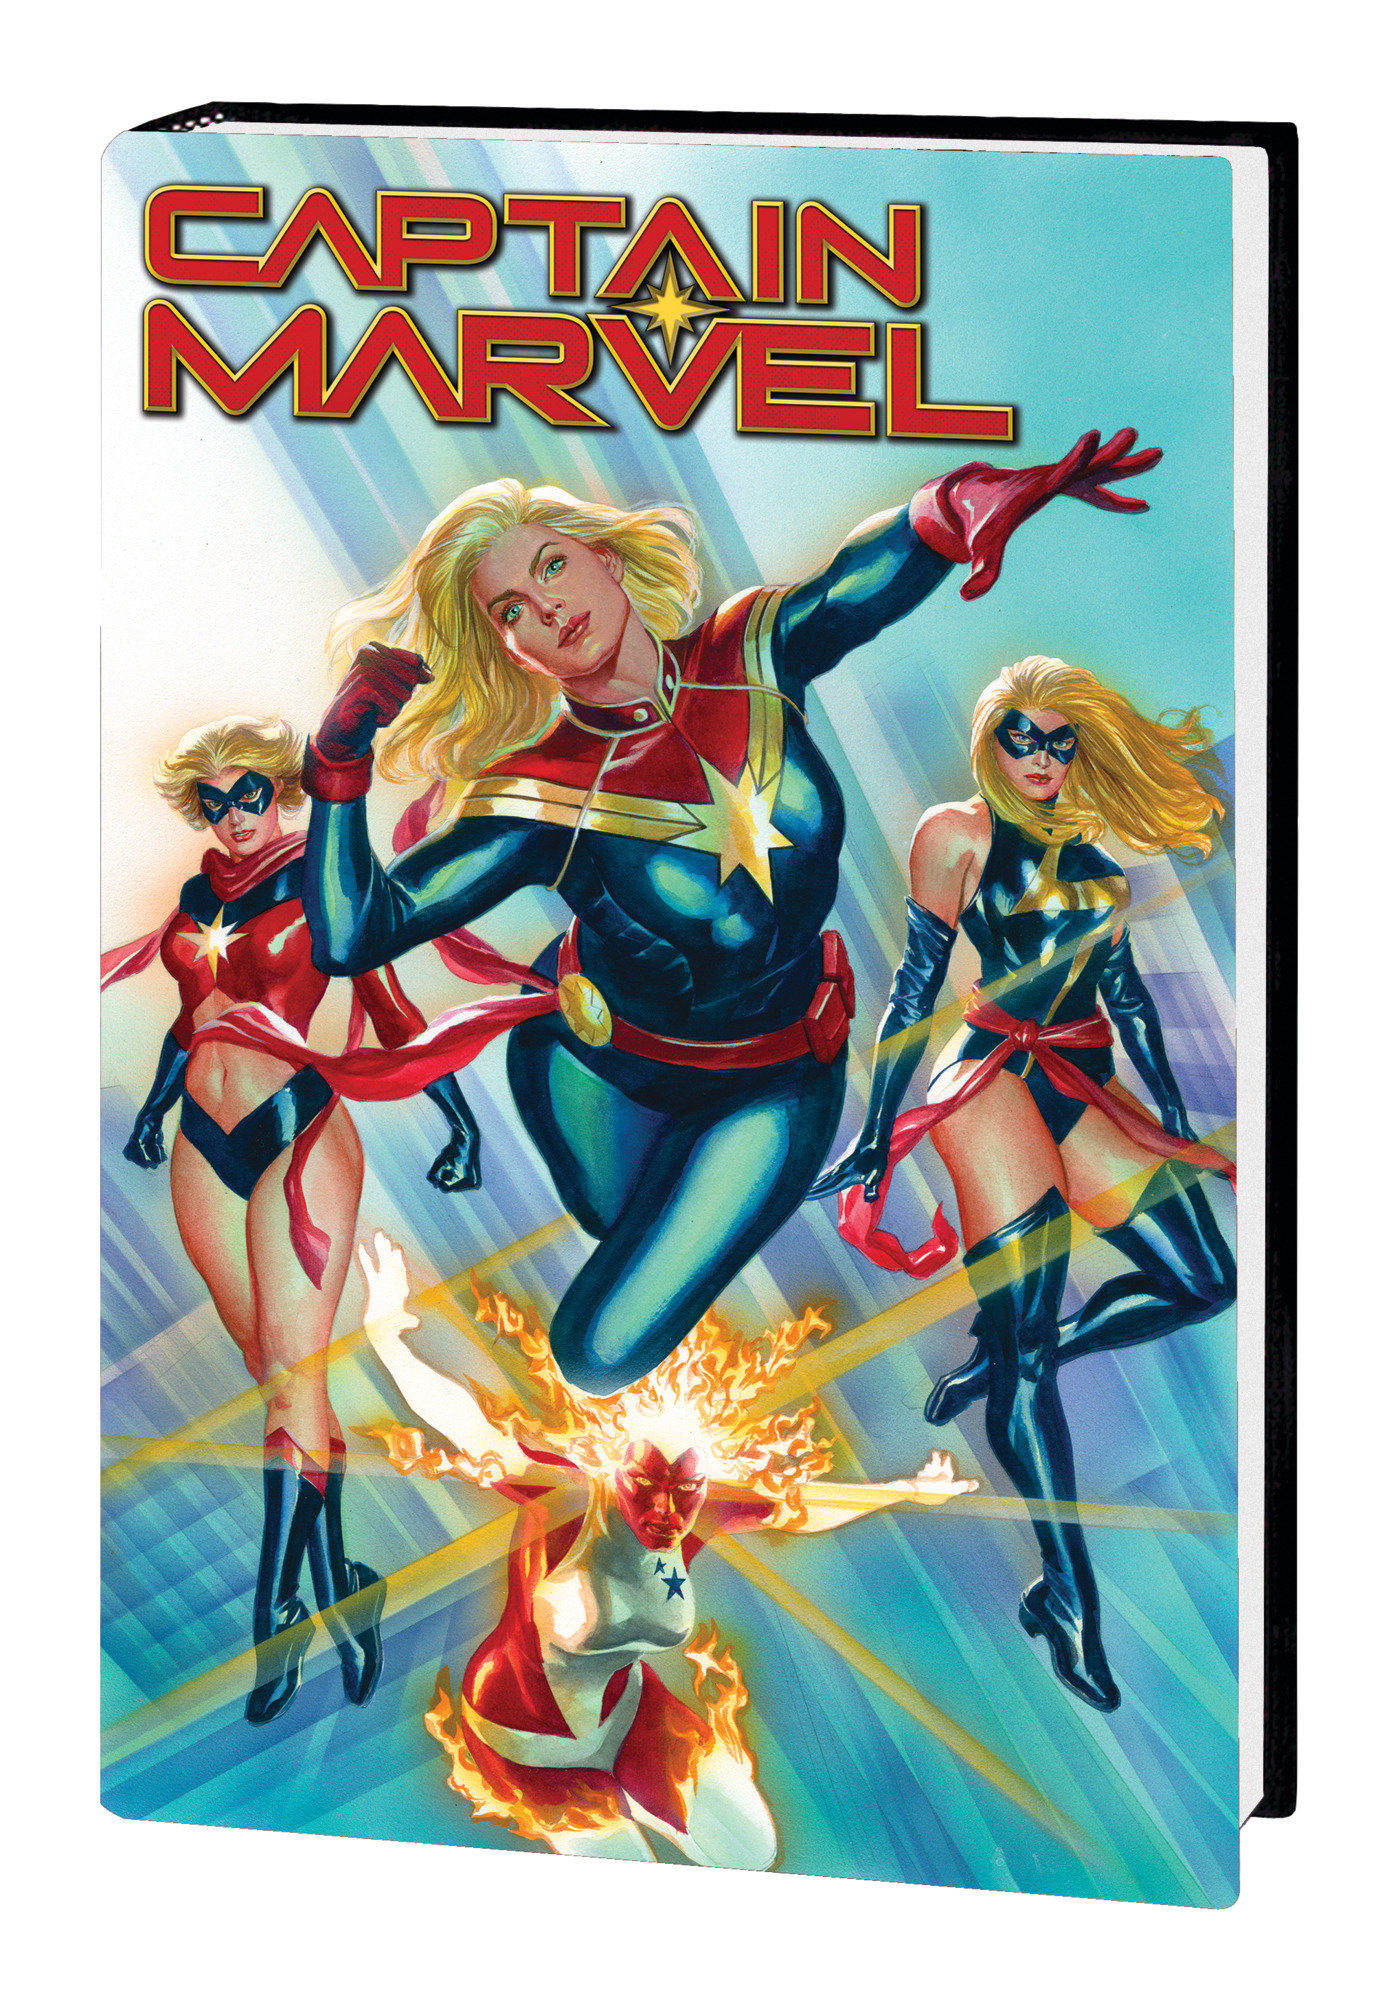 Captain Marvel by Thompson Omnibus Hardcover Volume 1 Ross Direct Market Variant